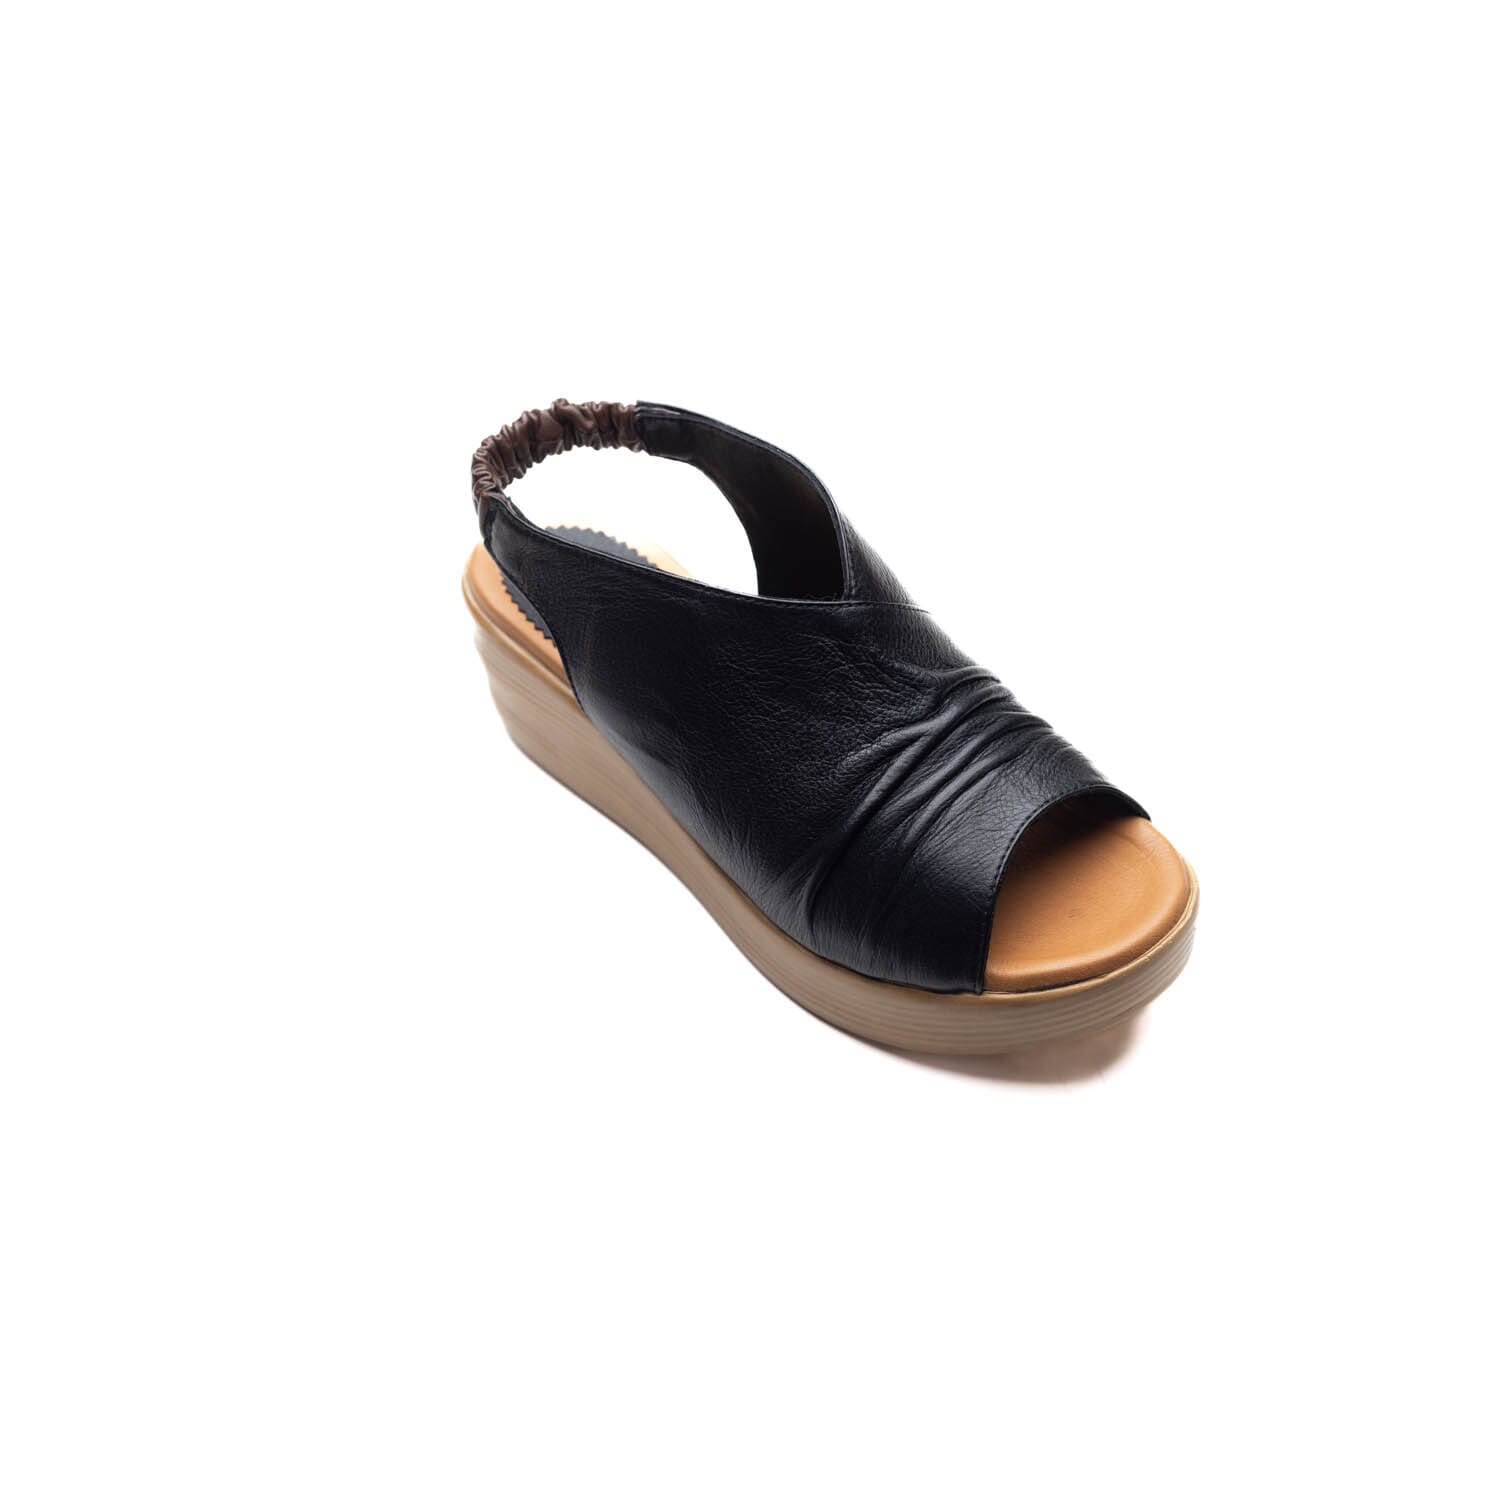 Sofia Mare – 11207 – Black – Perocili Shoes